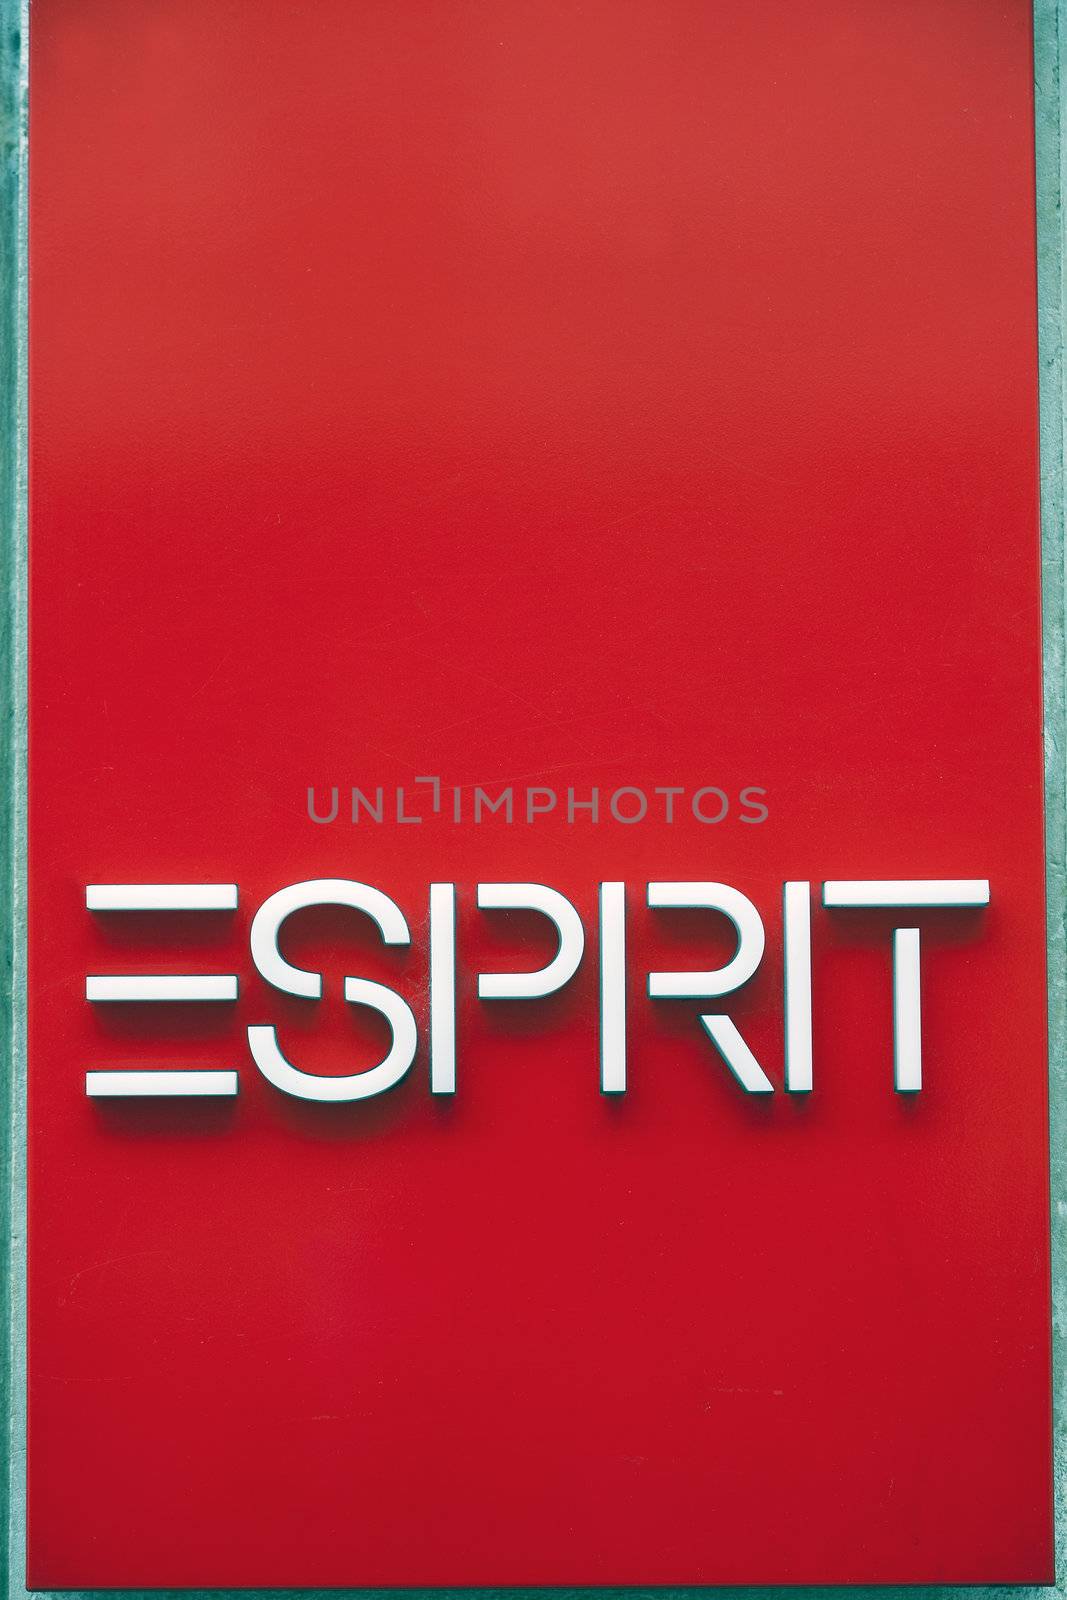 Geneva, Switzerland, September 25, 2011 - Esprit logo outside a store.